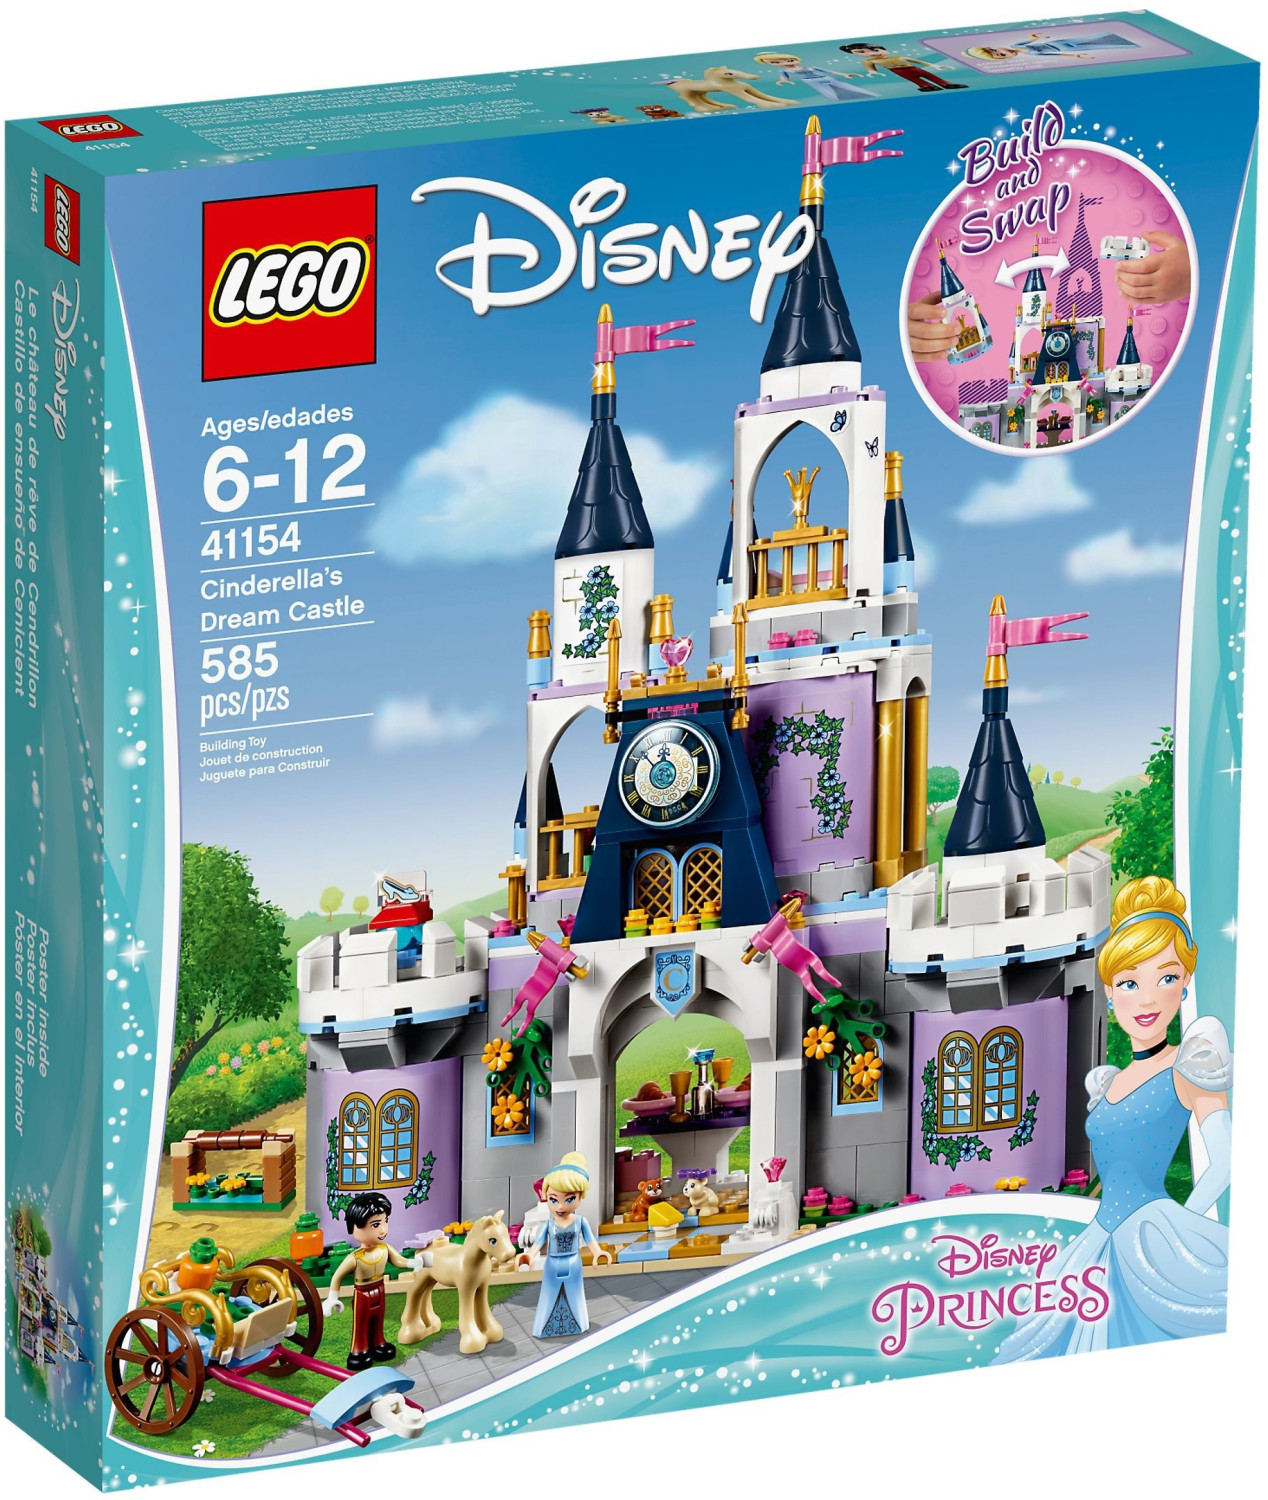 LEGO Disney Princess Castillo de Cenicienta y el Principe 43206